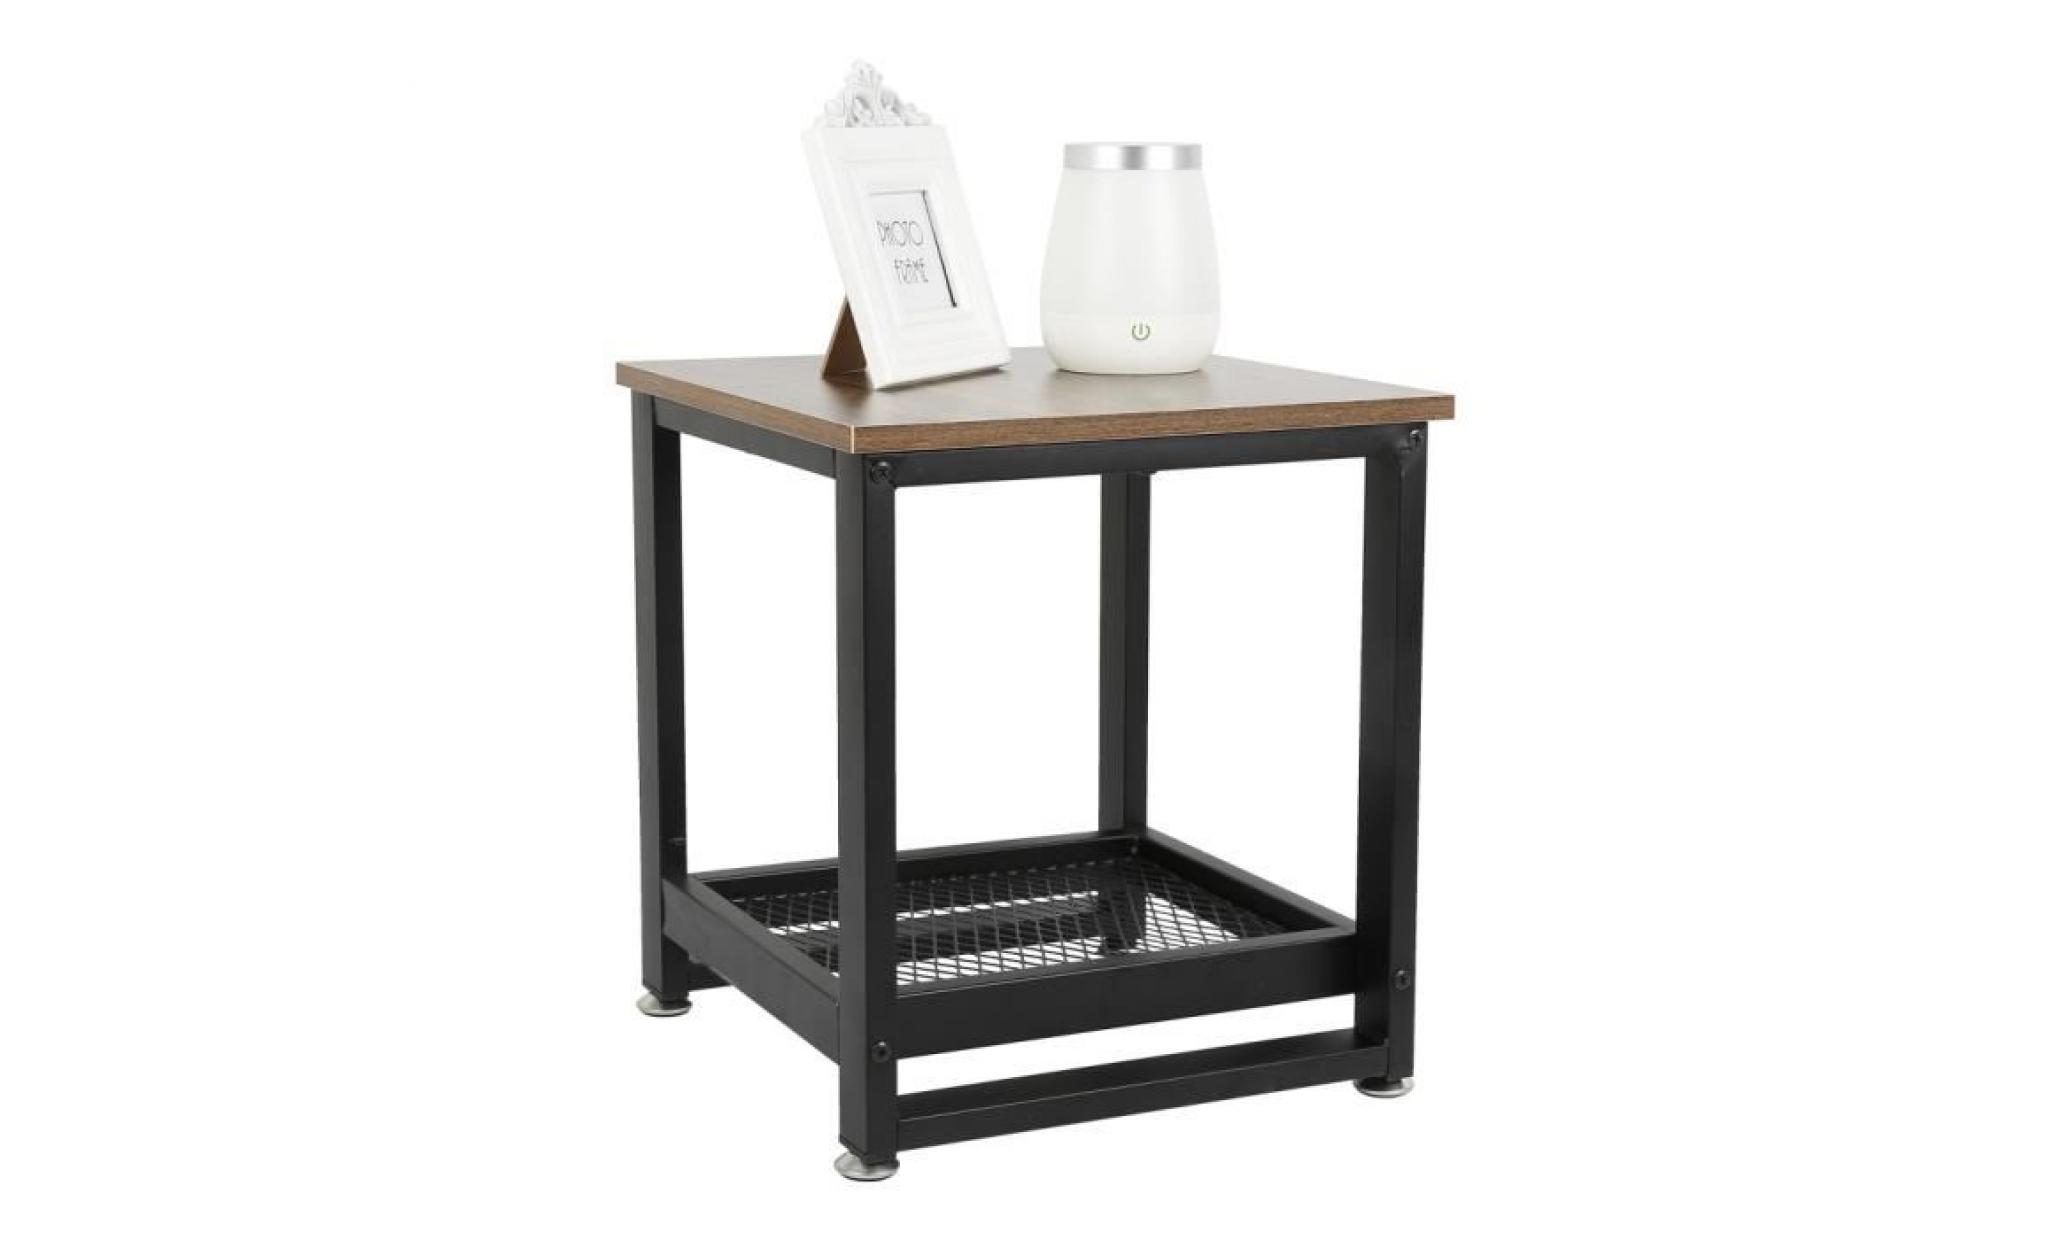 jeobest® tables de chevet lot de 2 style industriel avec rangement armature en métal table rétro pas cher